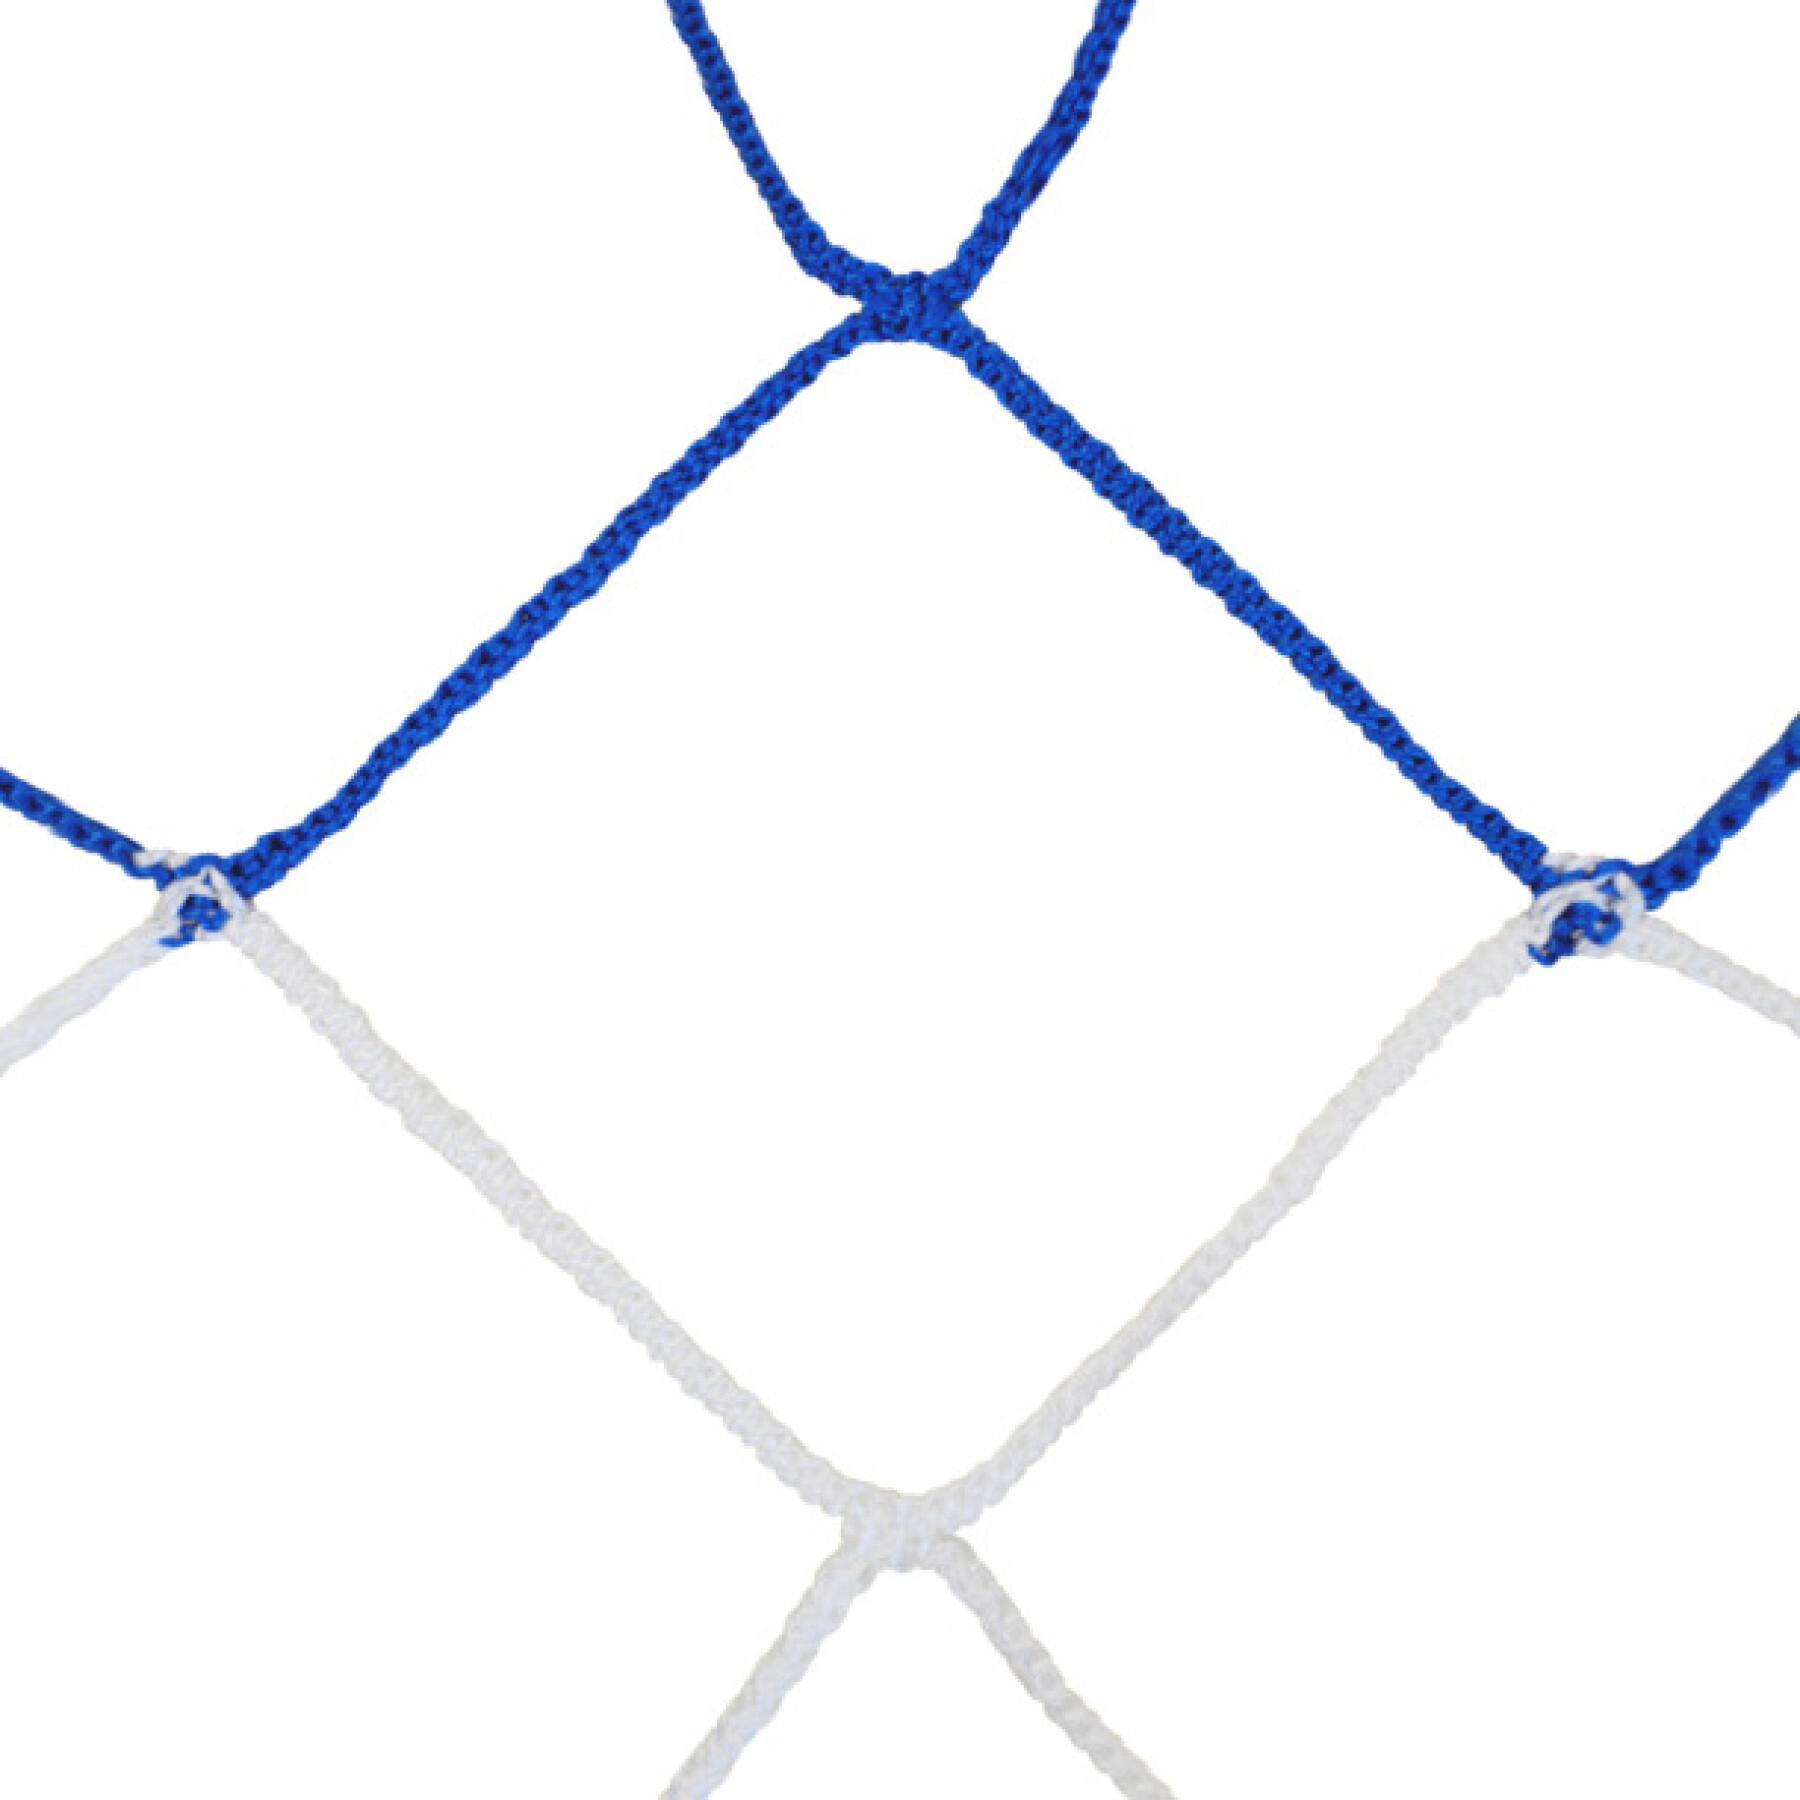 Zwei Paar zweifarbige Handballnetze aus geflochtenem Pp einfache Masche Emdé 4 mm